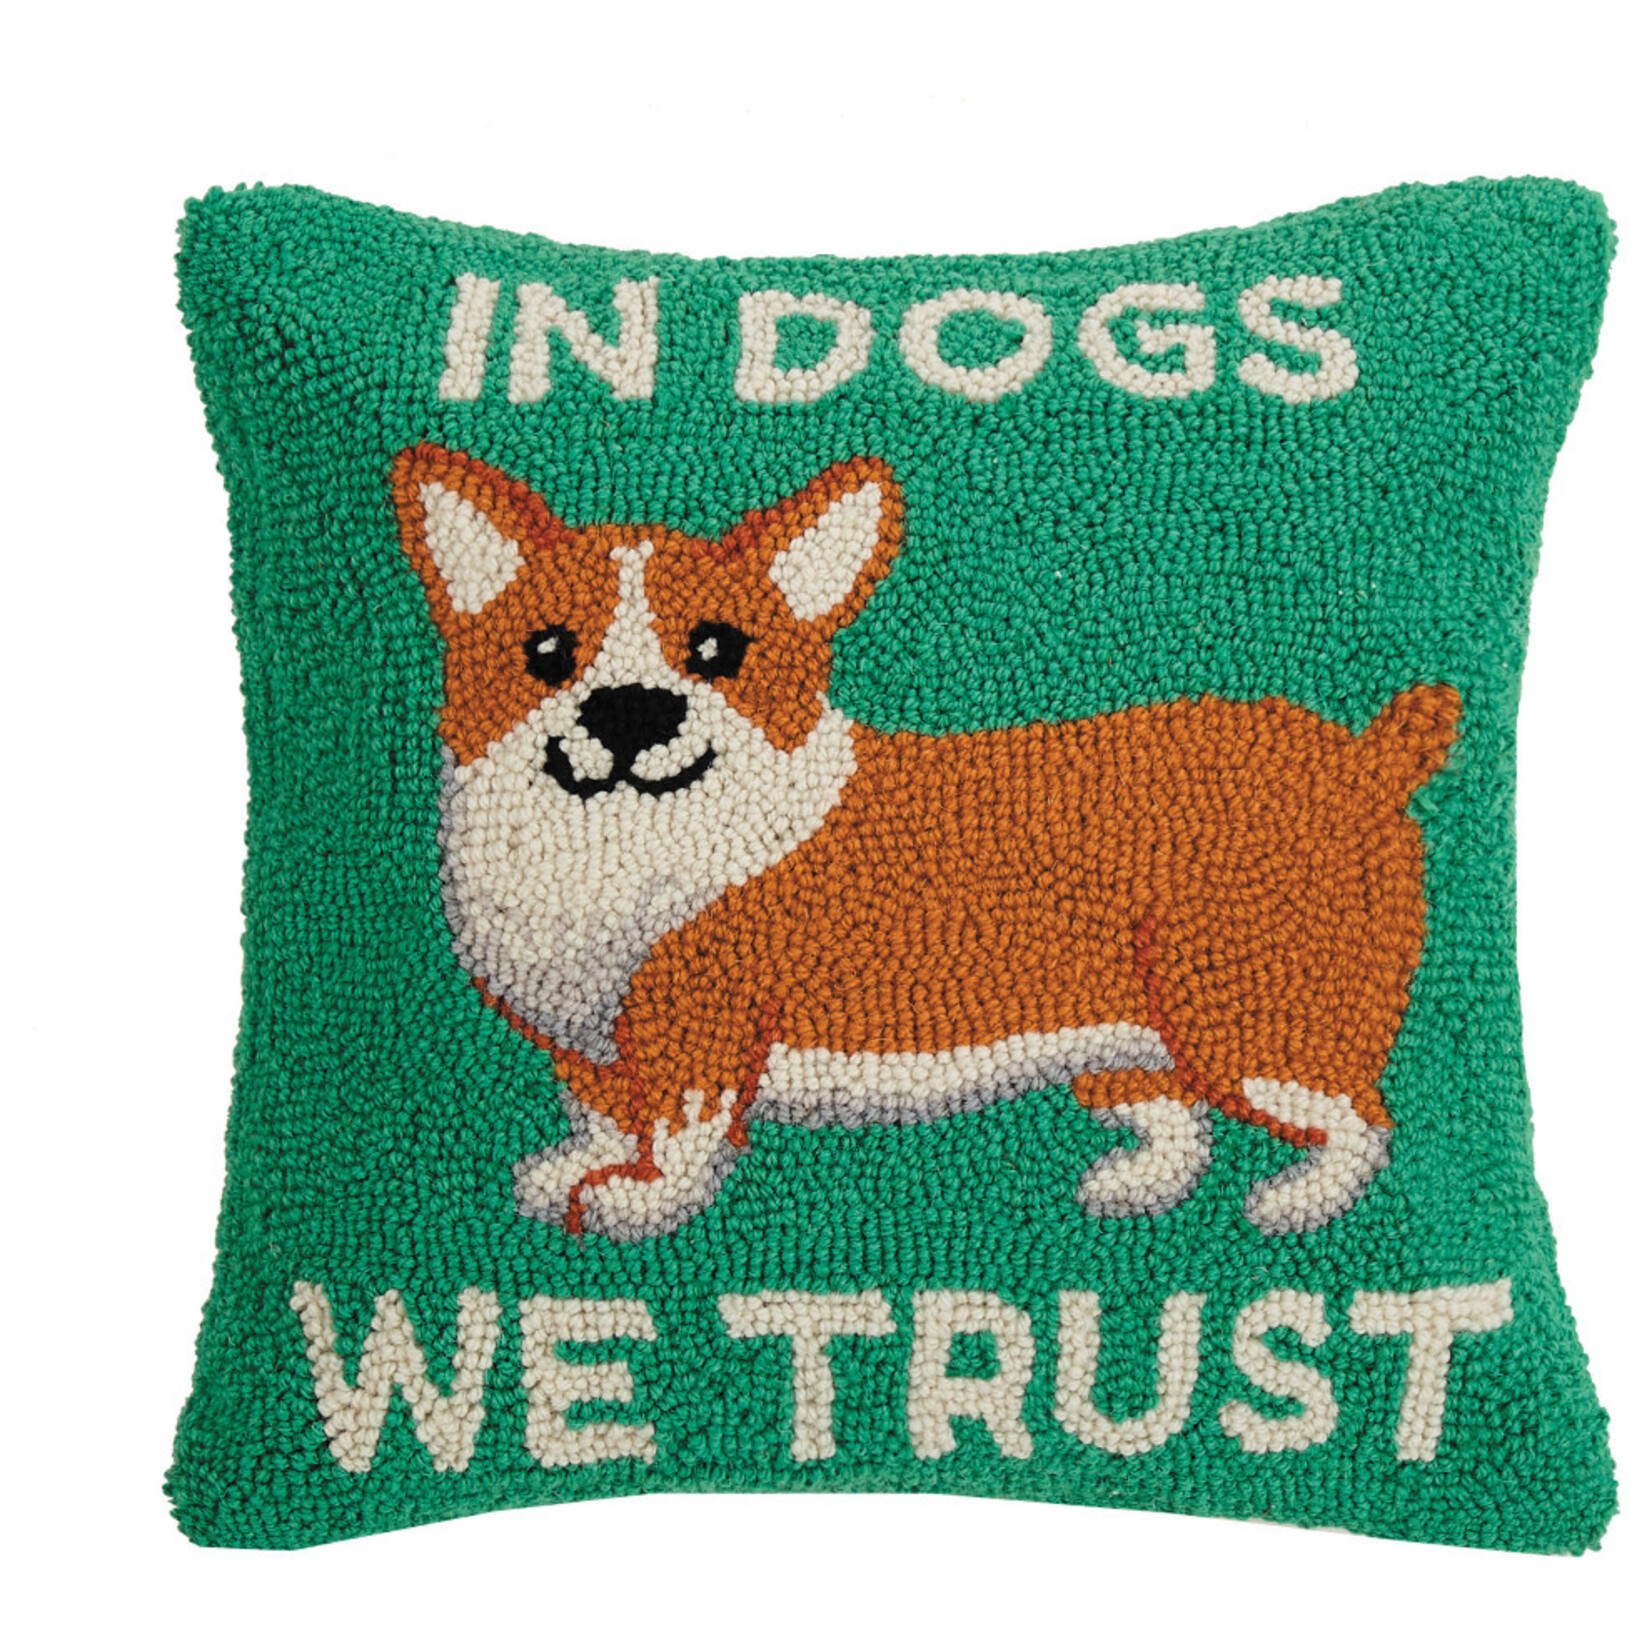 Peking Handicraft In Dogs We Trust Pillow. 16x16"